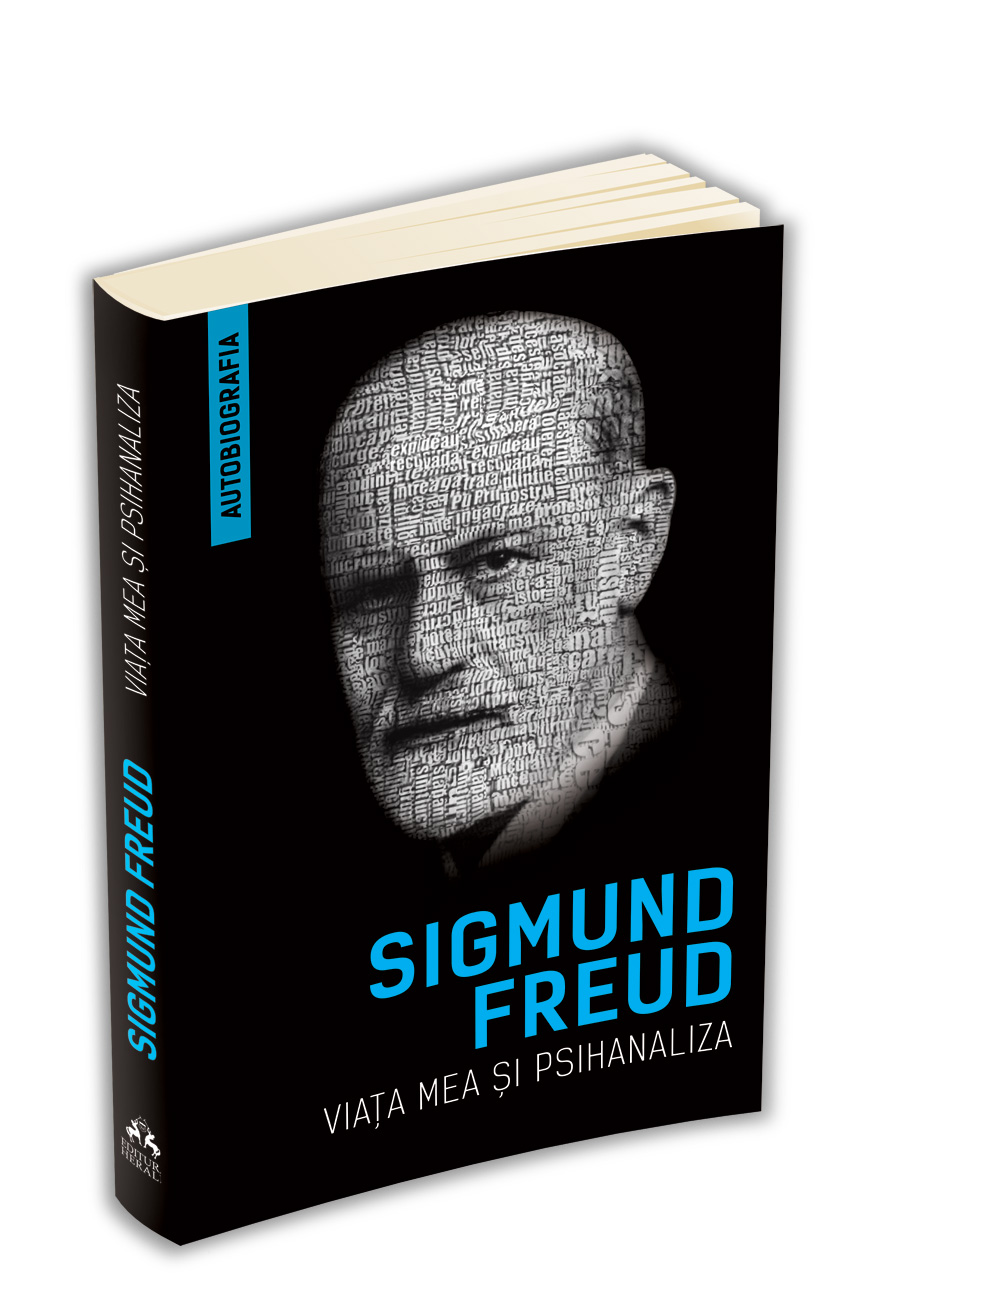 Viata mea si psihanaliza | Sigmund Freud carturesti.ro Biografii, memorii, jurnale